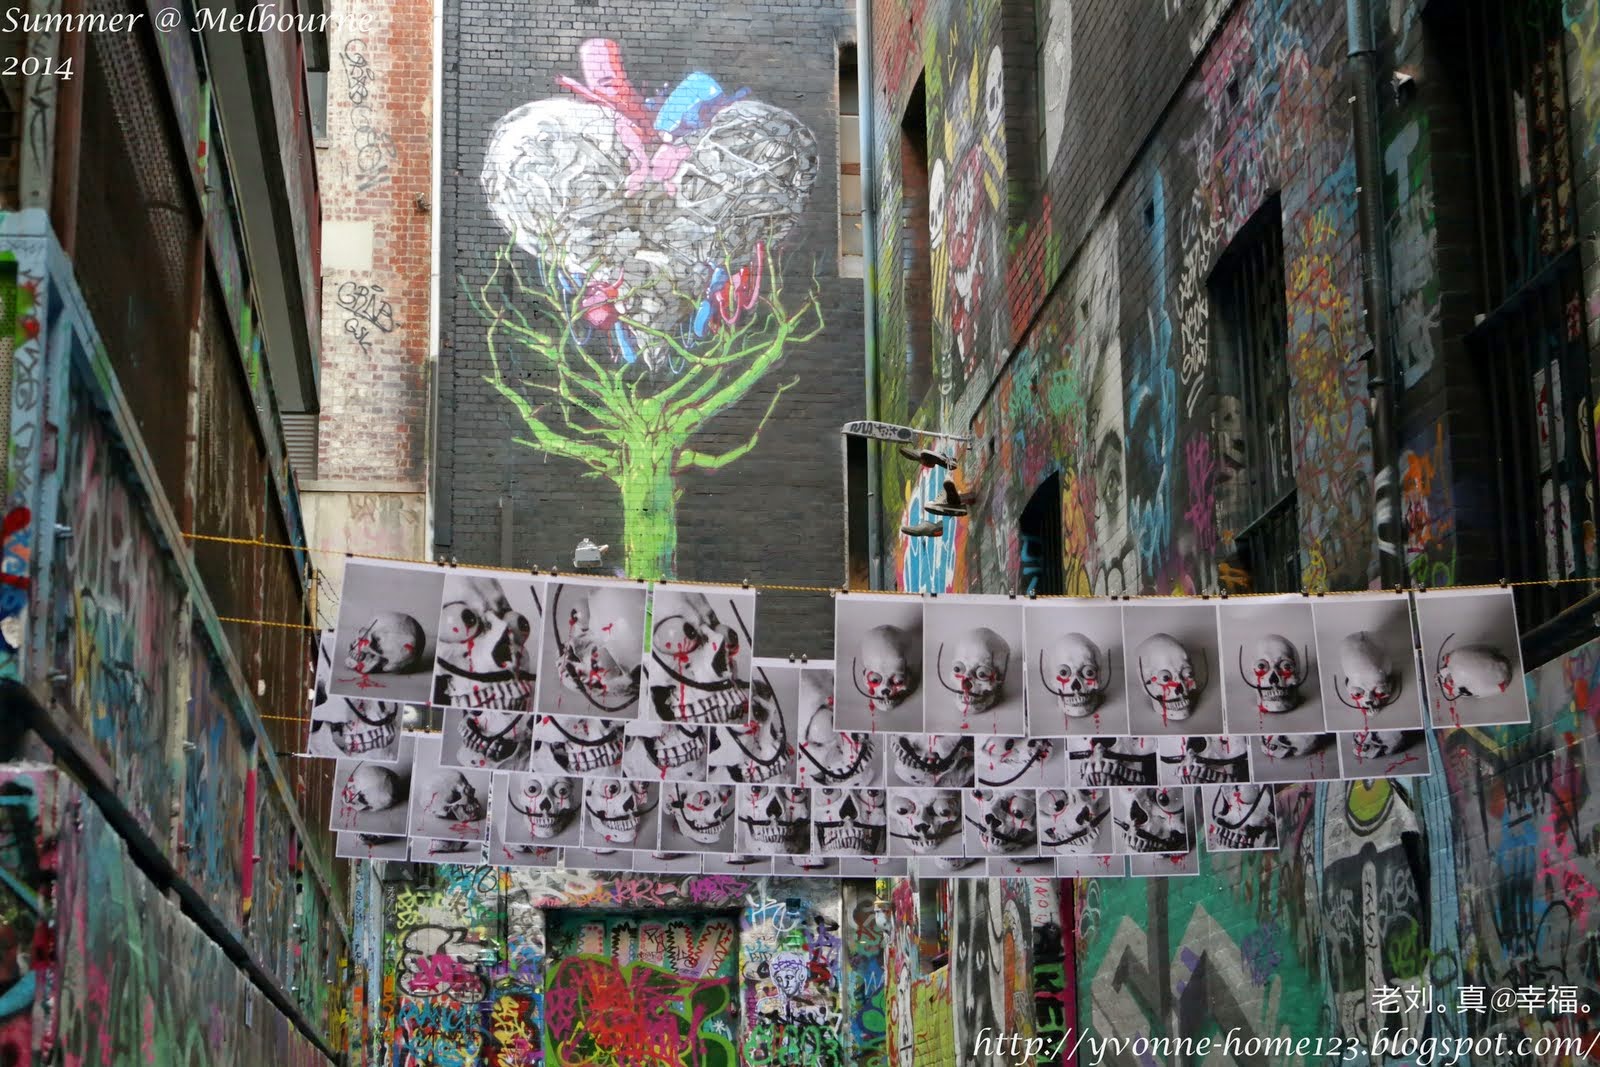 老刘。真@幸福。: Grafitti @ Melbourne 墨尔本街头涂鸦